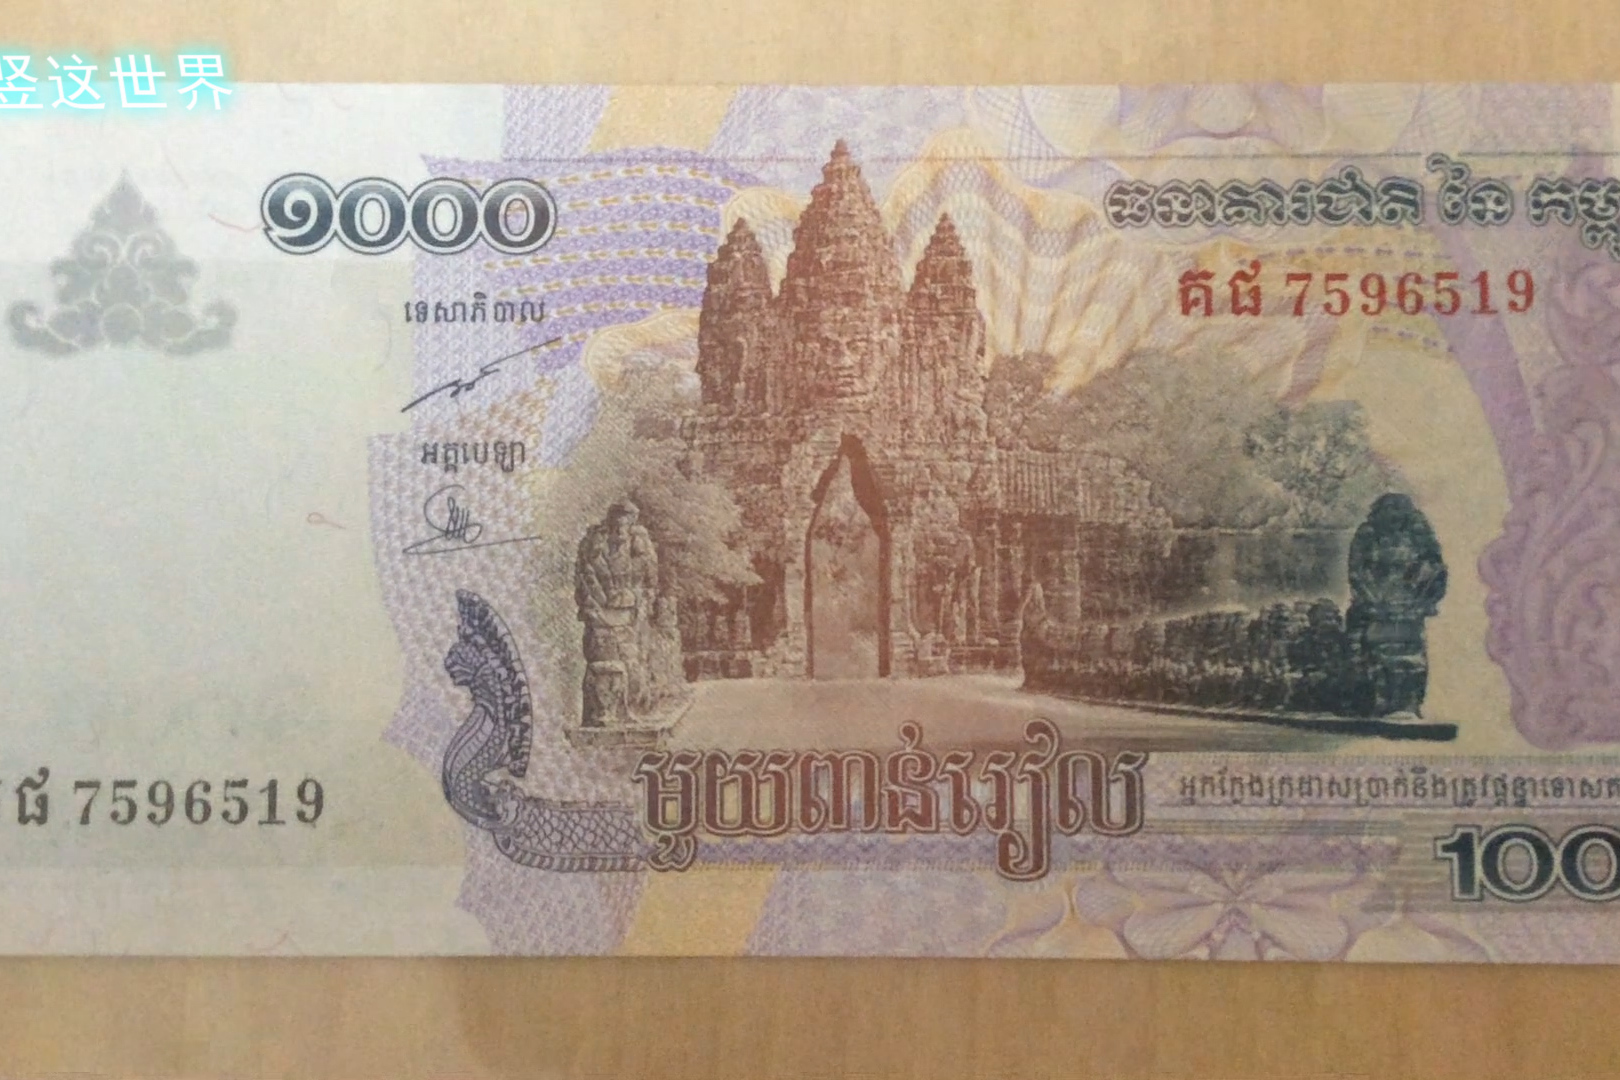 柬埔寨的货币1000瑞尔,告诉你该国的大吴哥城